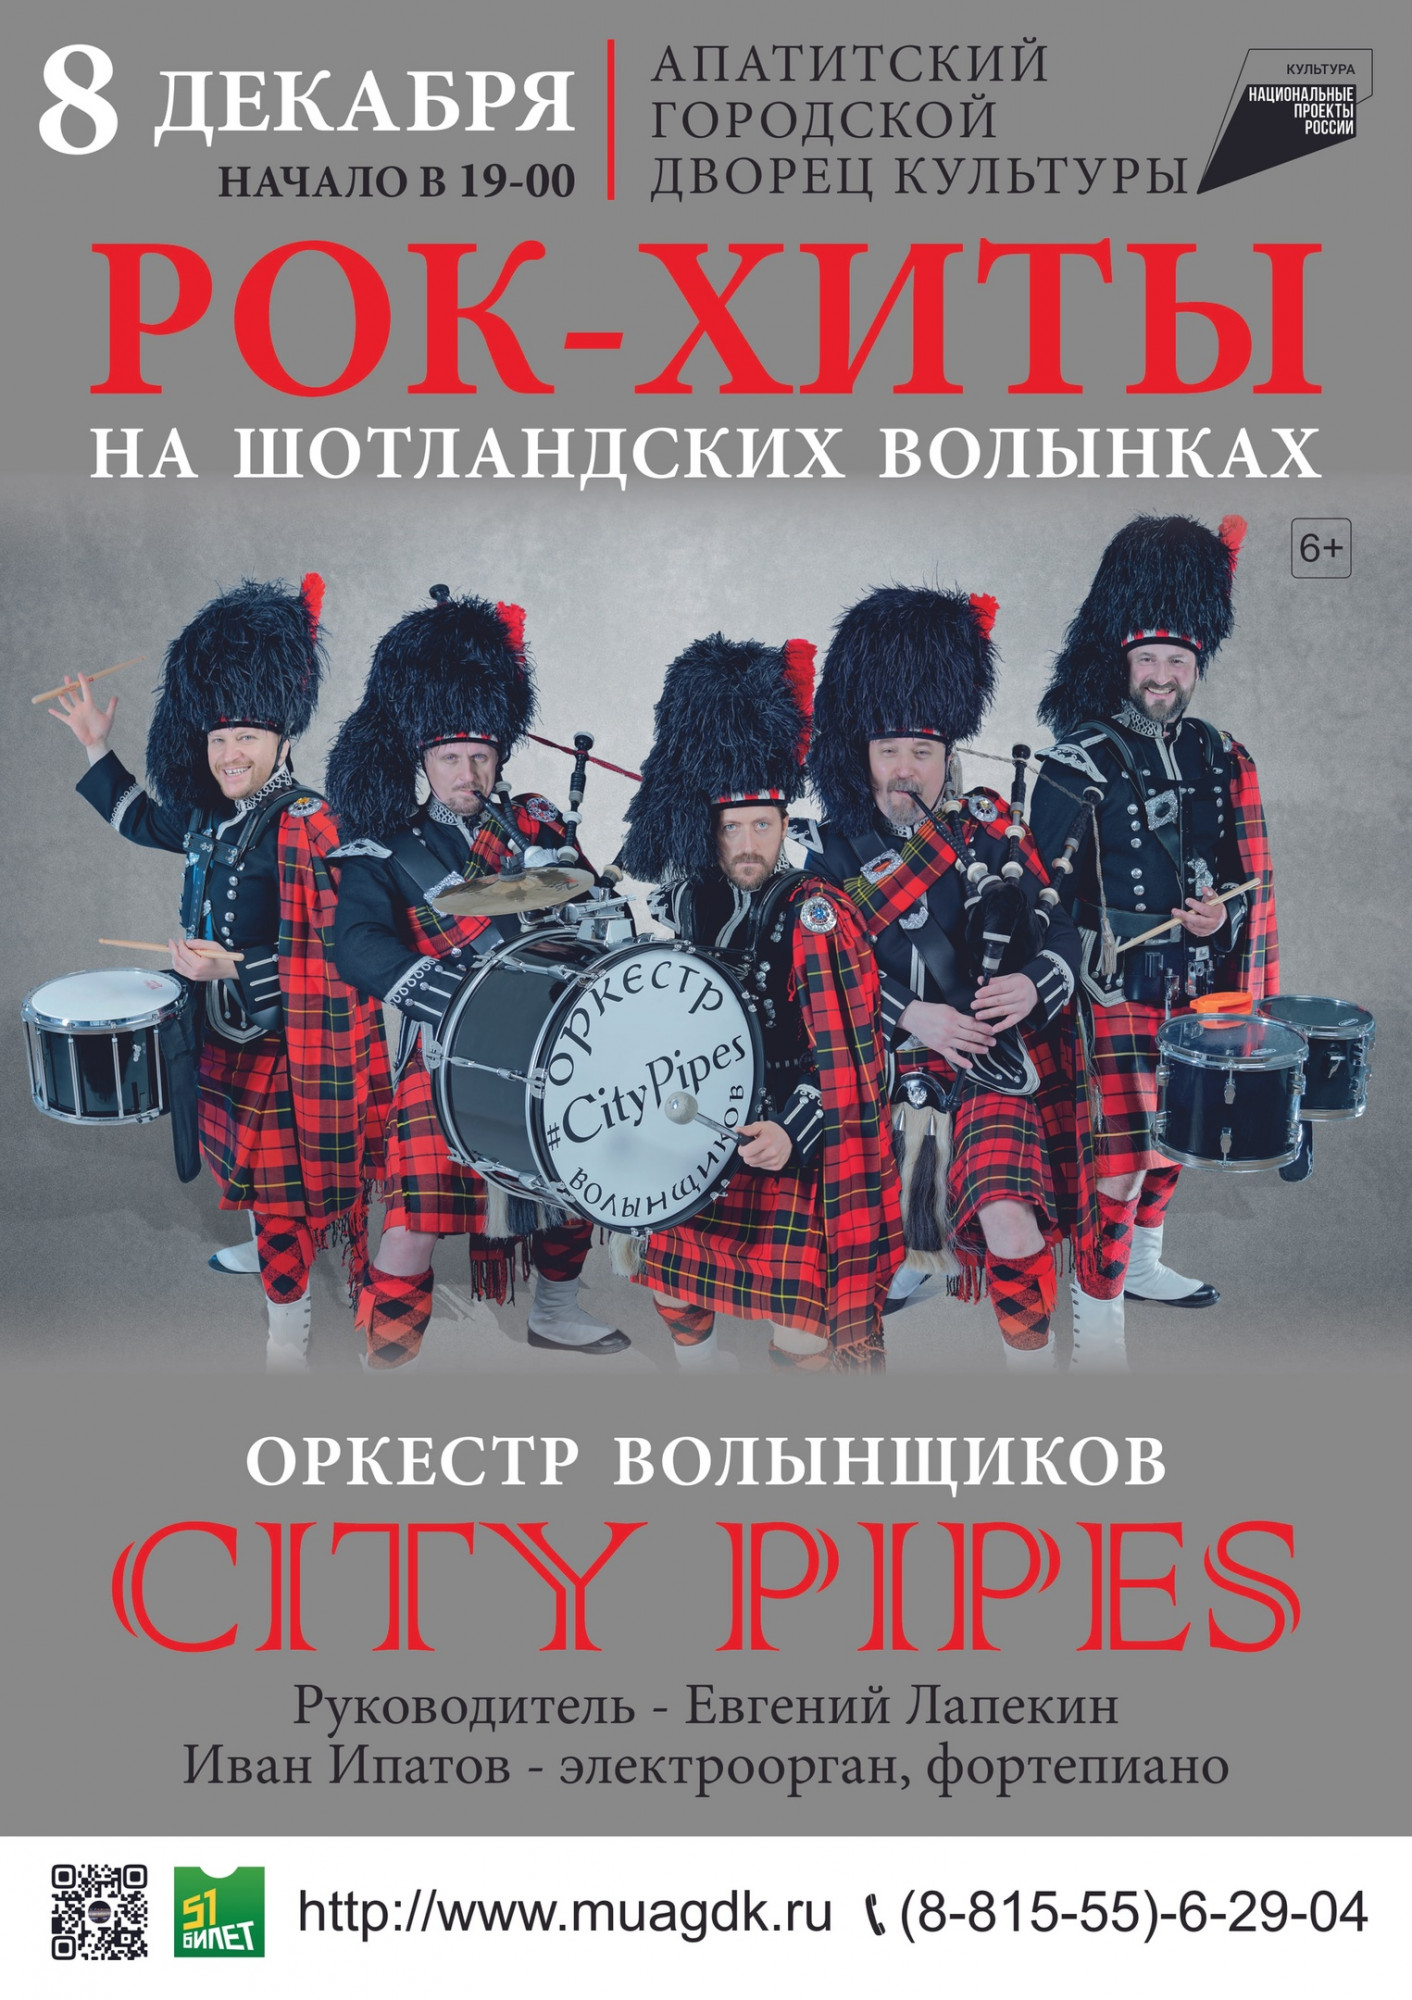 В Апатитах состоится захватывающее шоу от оркестра волынщиков City Pipes